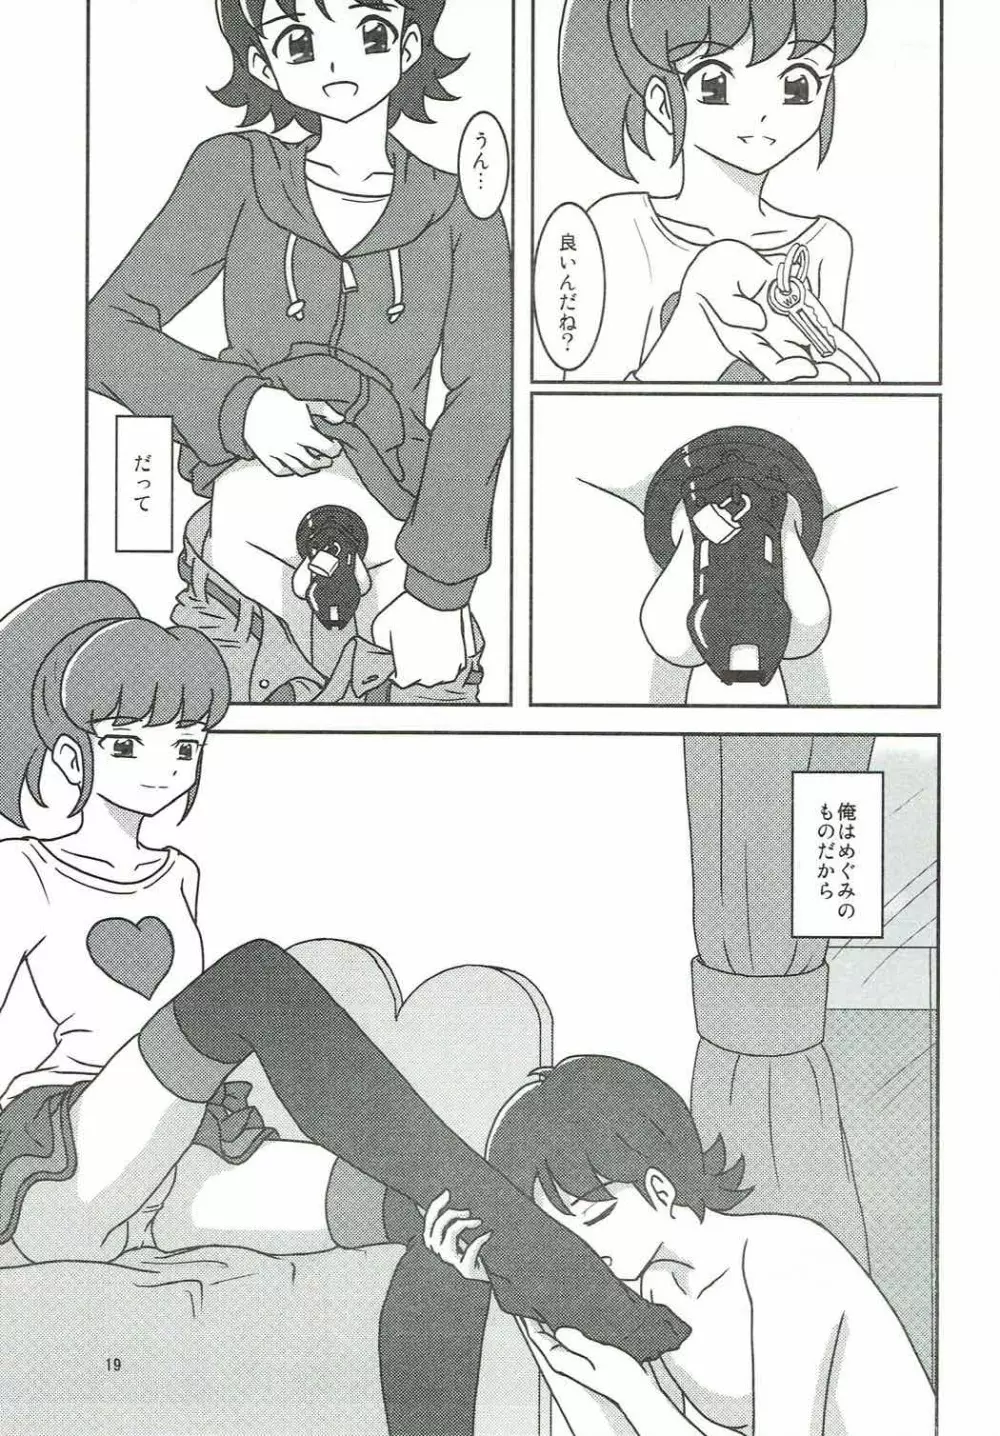 ハピネスチャージズリキュア!2 - page20